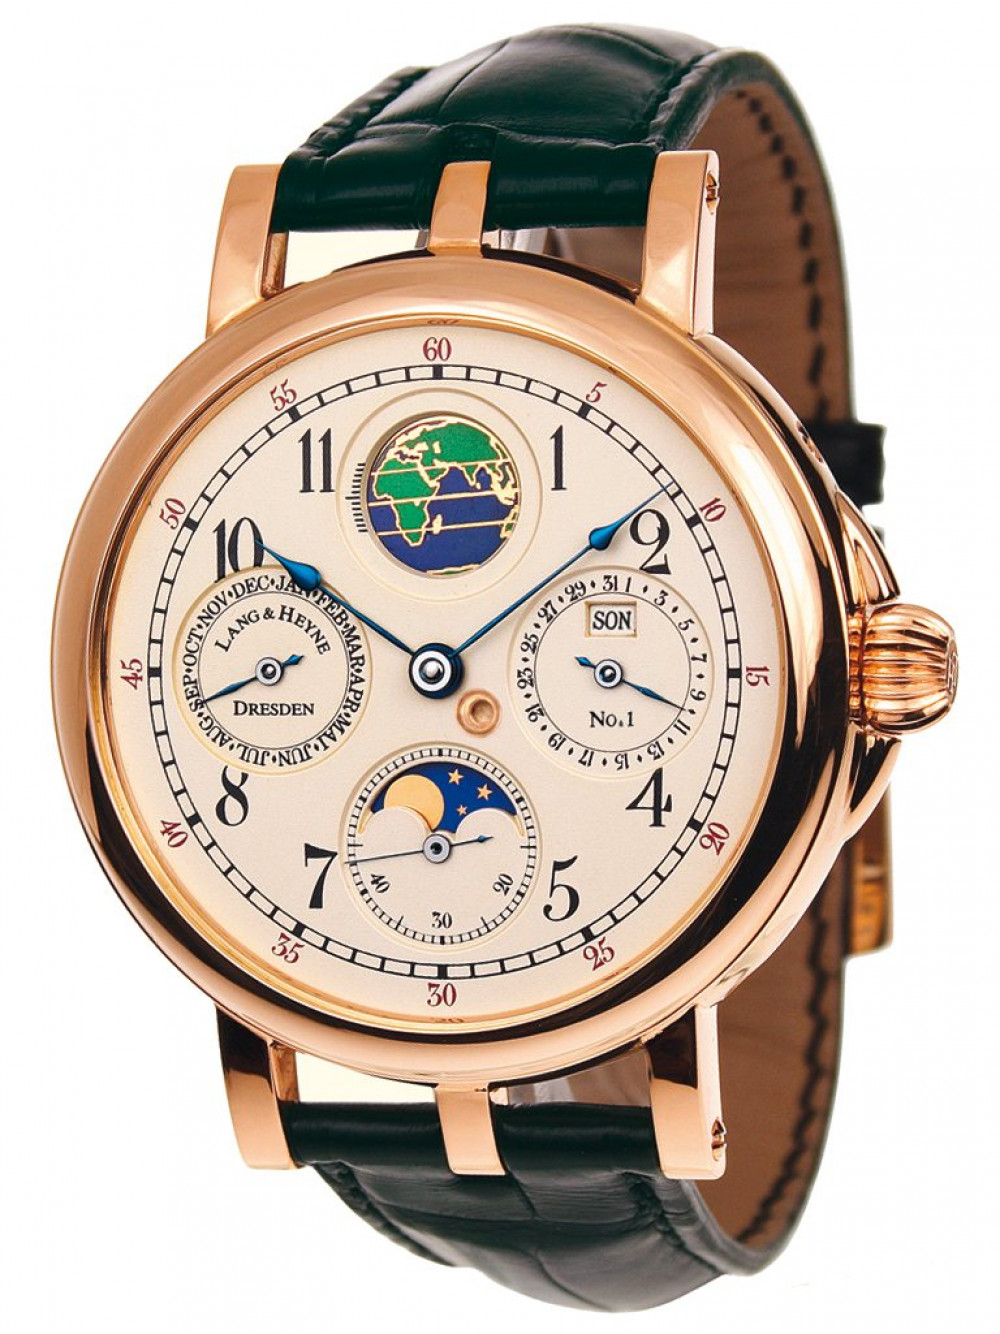 Zegarek firmy Lang & Heyne, model Moritz von Sachsen